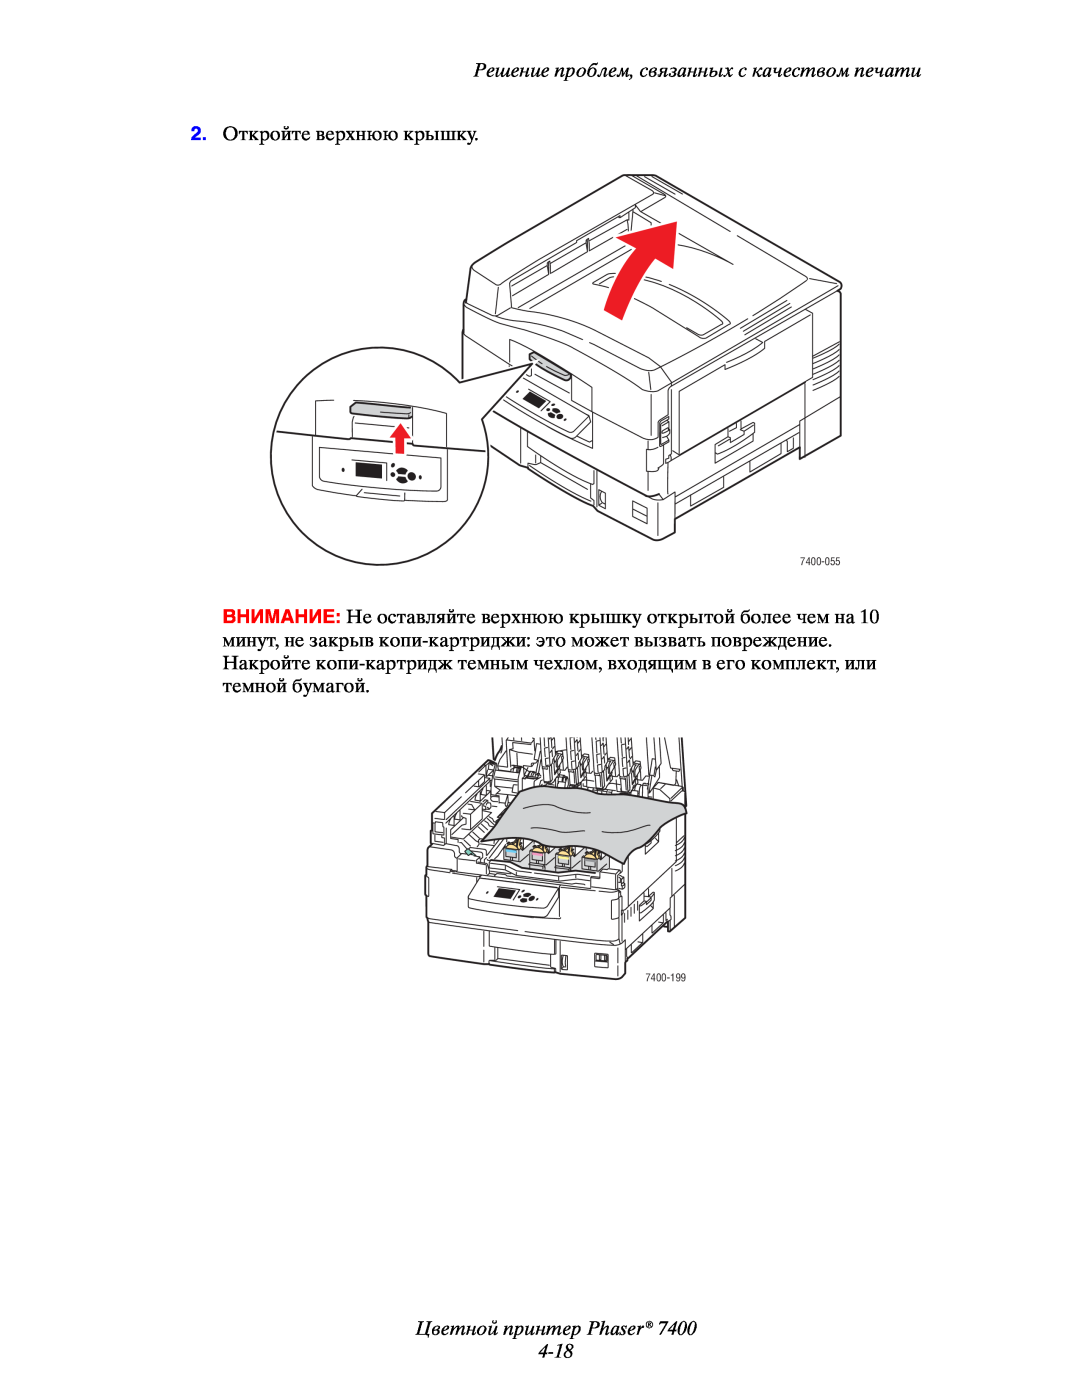 Xerox 7400 manual Цветной принтер Phaser 4-18, Решение проблем, связанных с качеством печати, 2.Откройте верхнюю крышку 